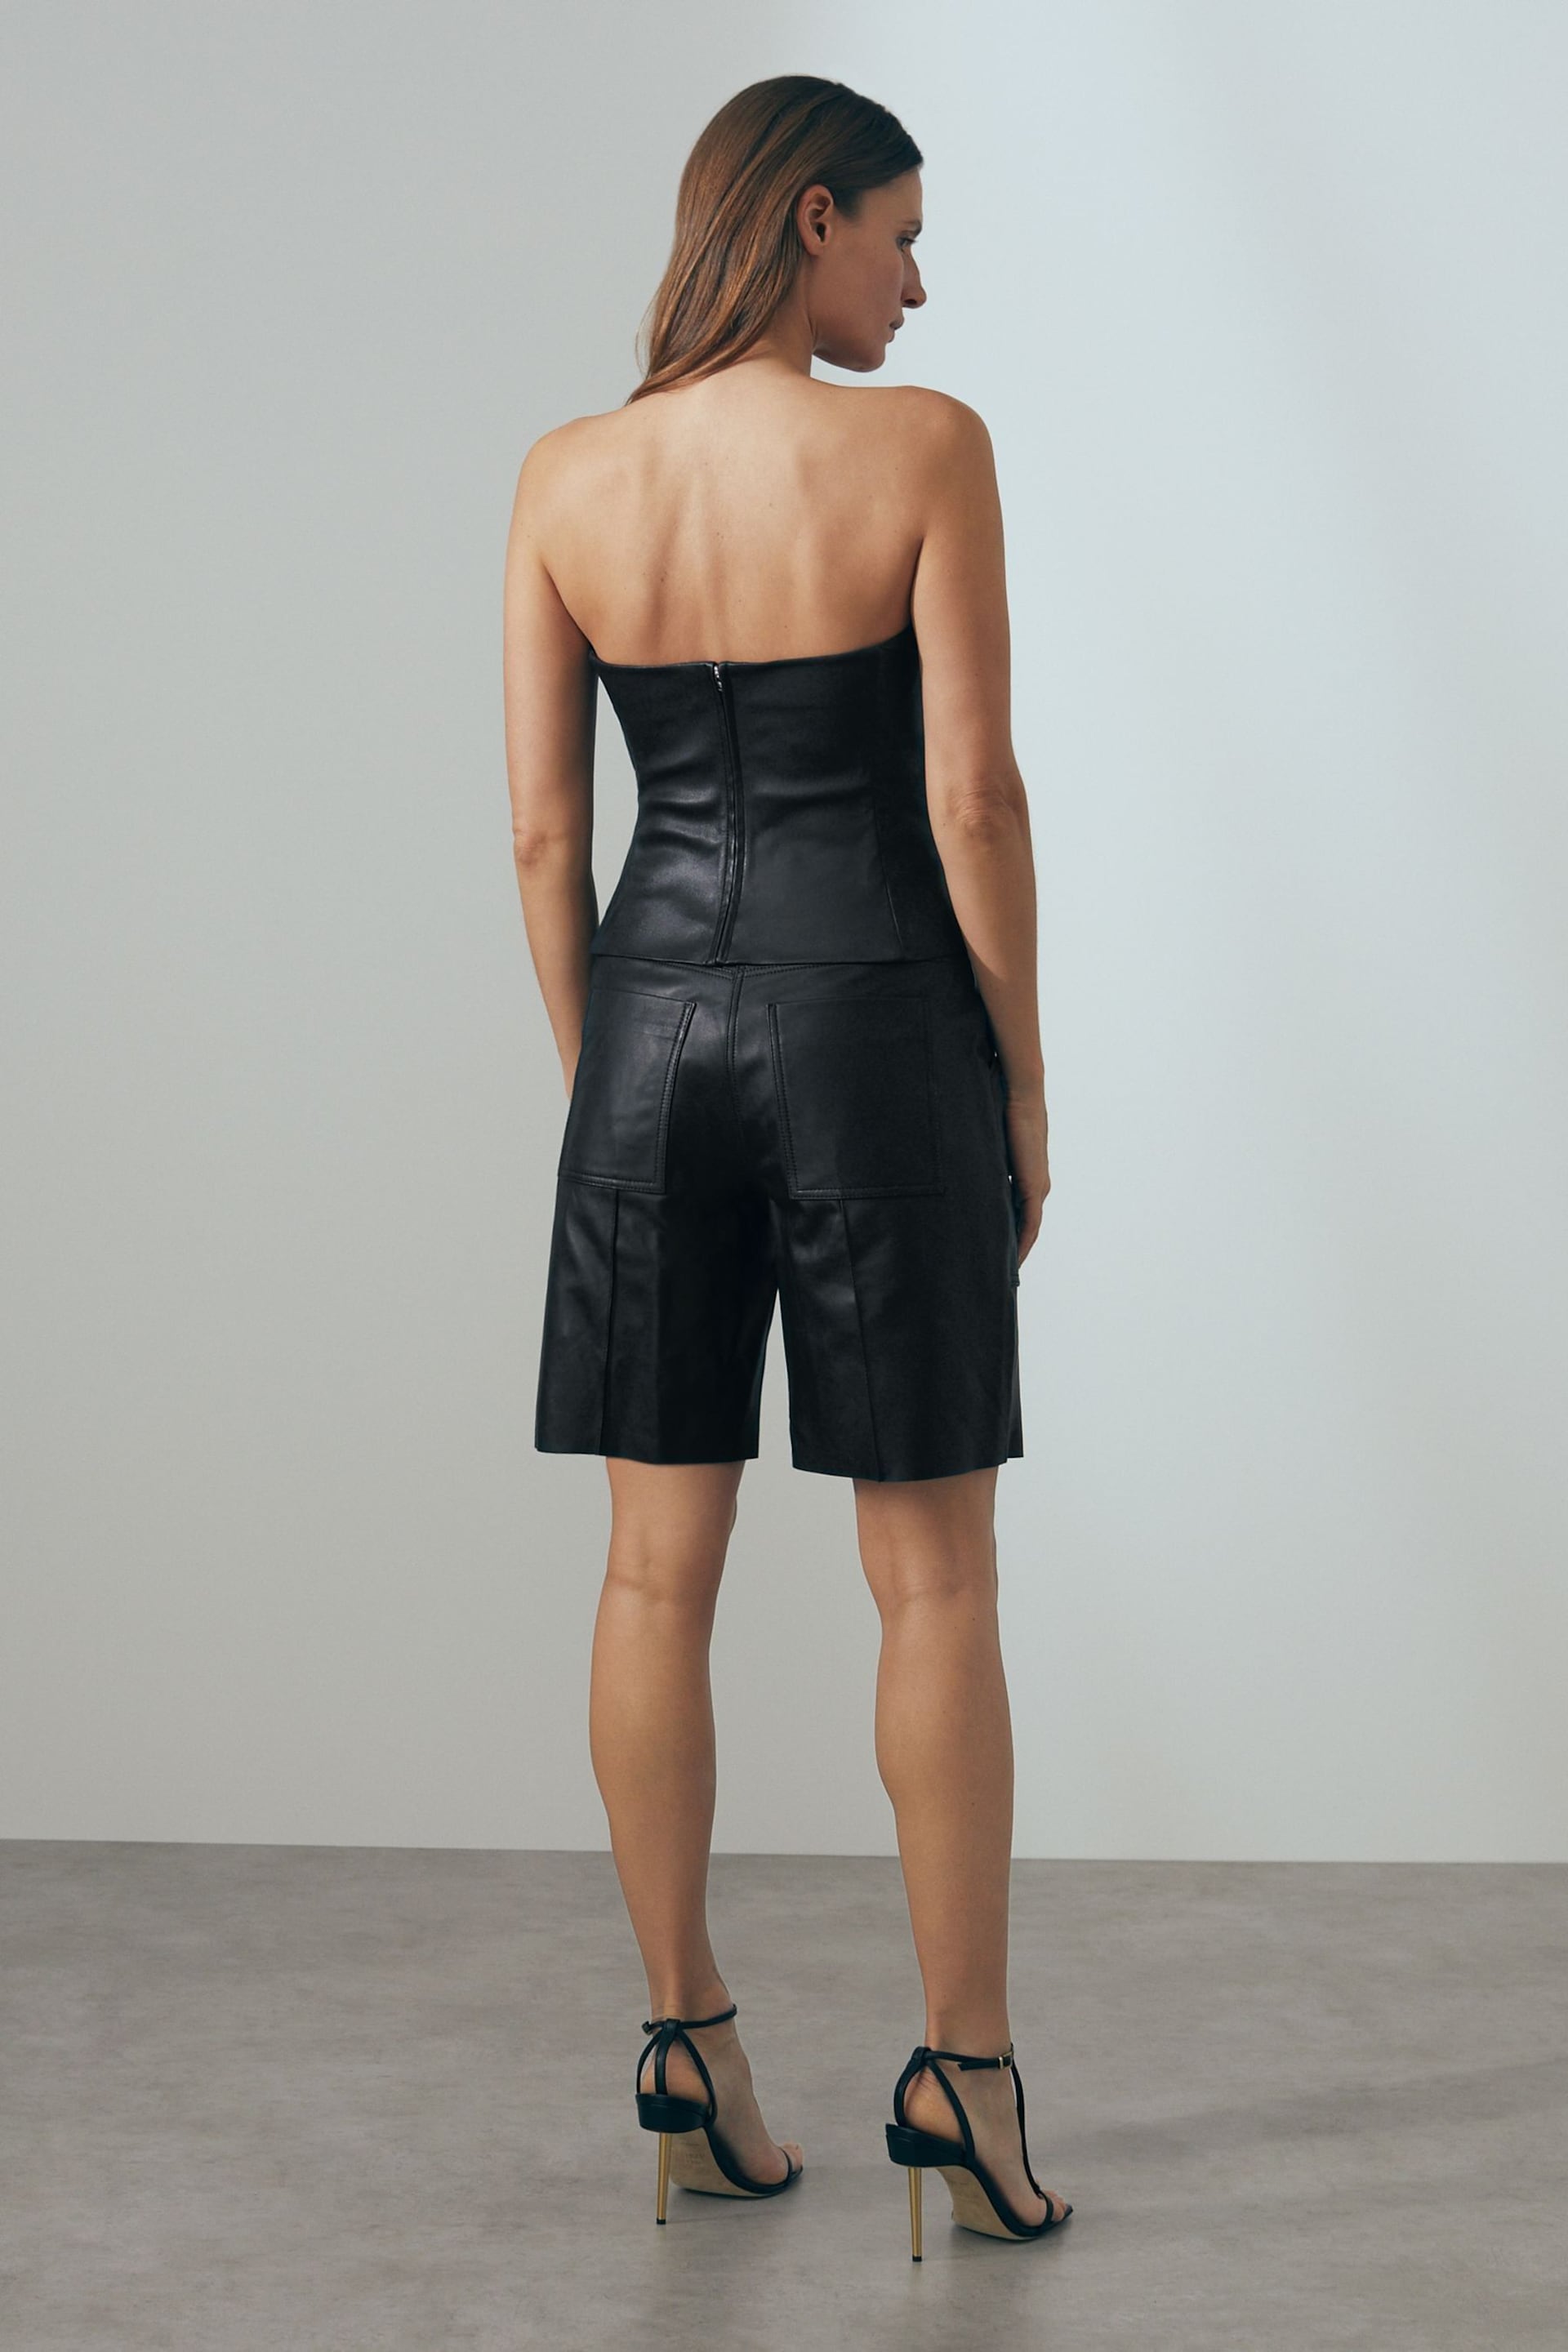 Atelier Leather Cargo Shorts - Image 6 of 7